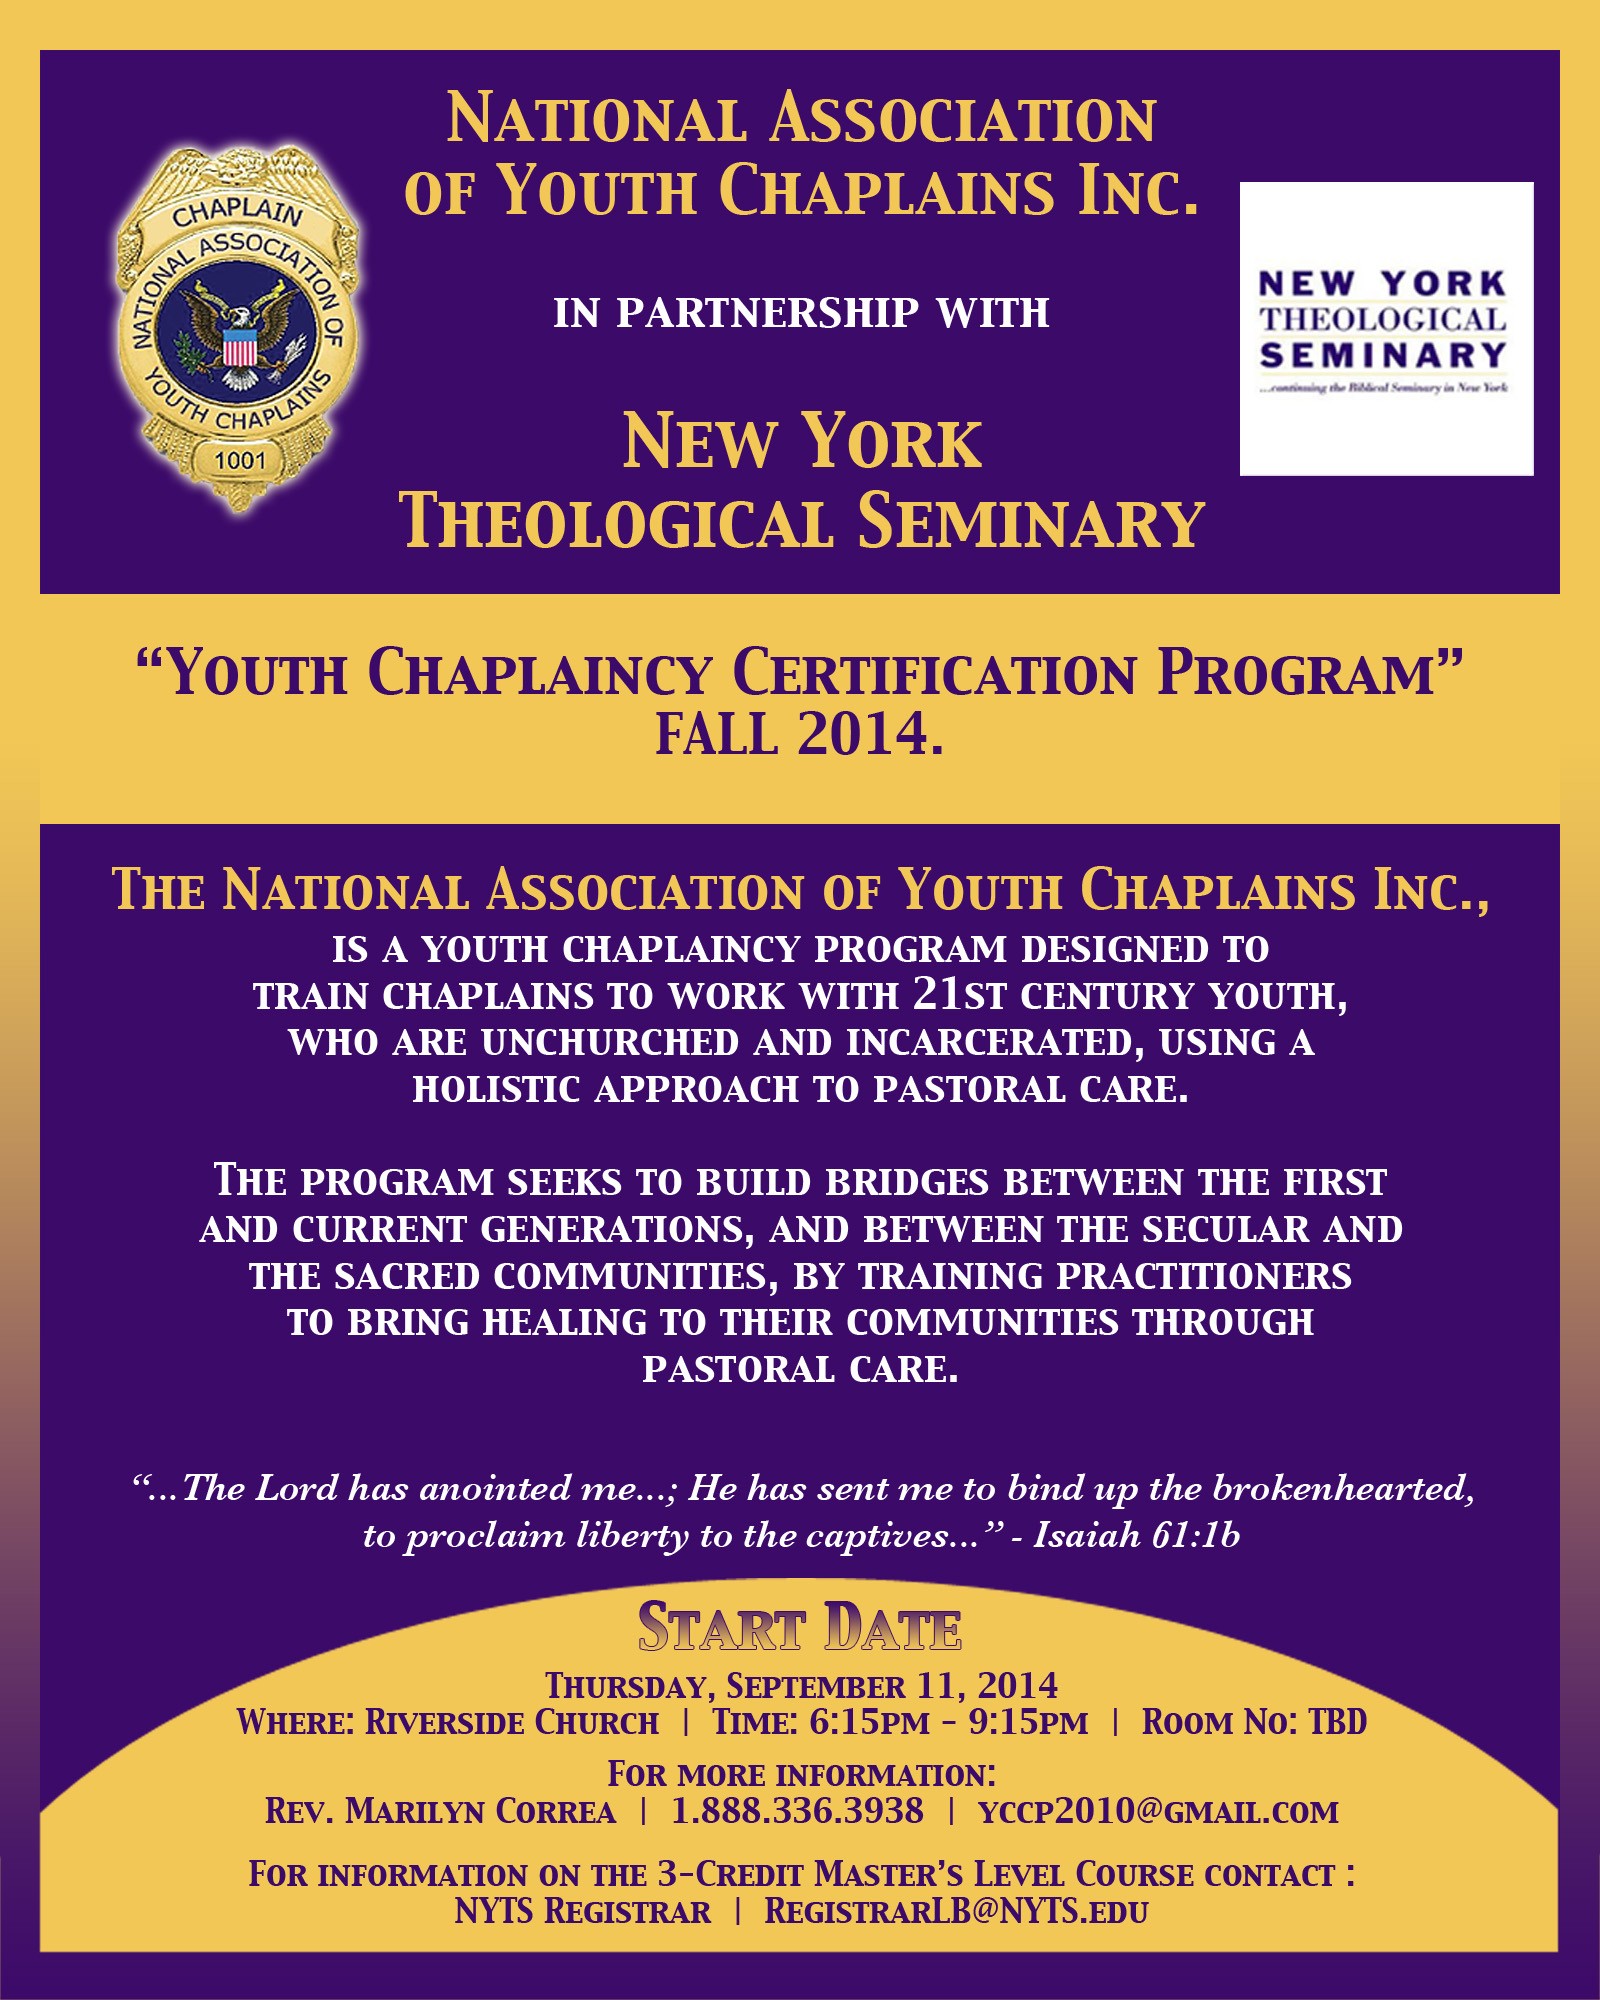 Youth Chaplaincy Certification Program September 11 2014 New York